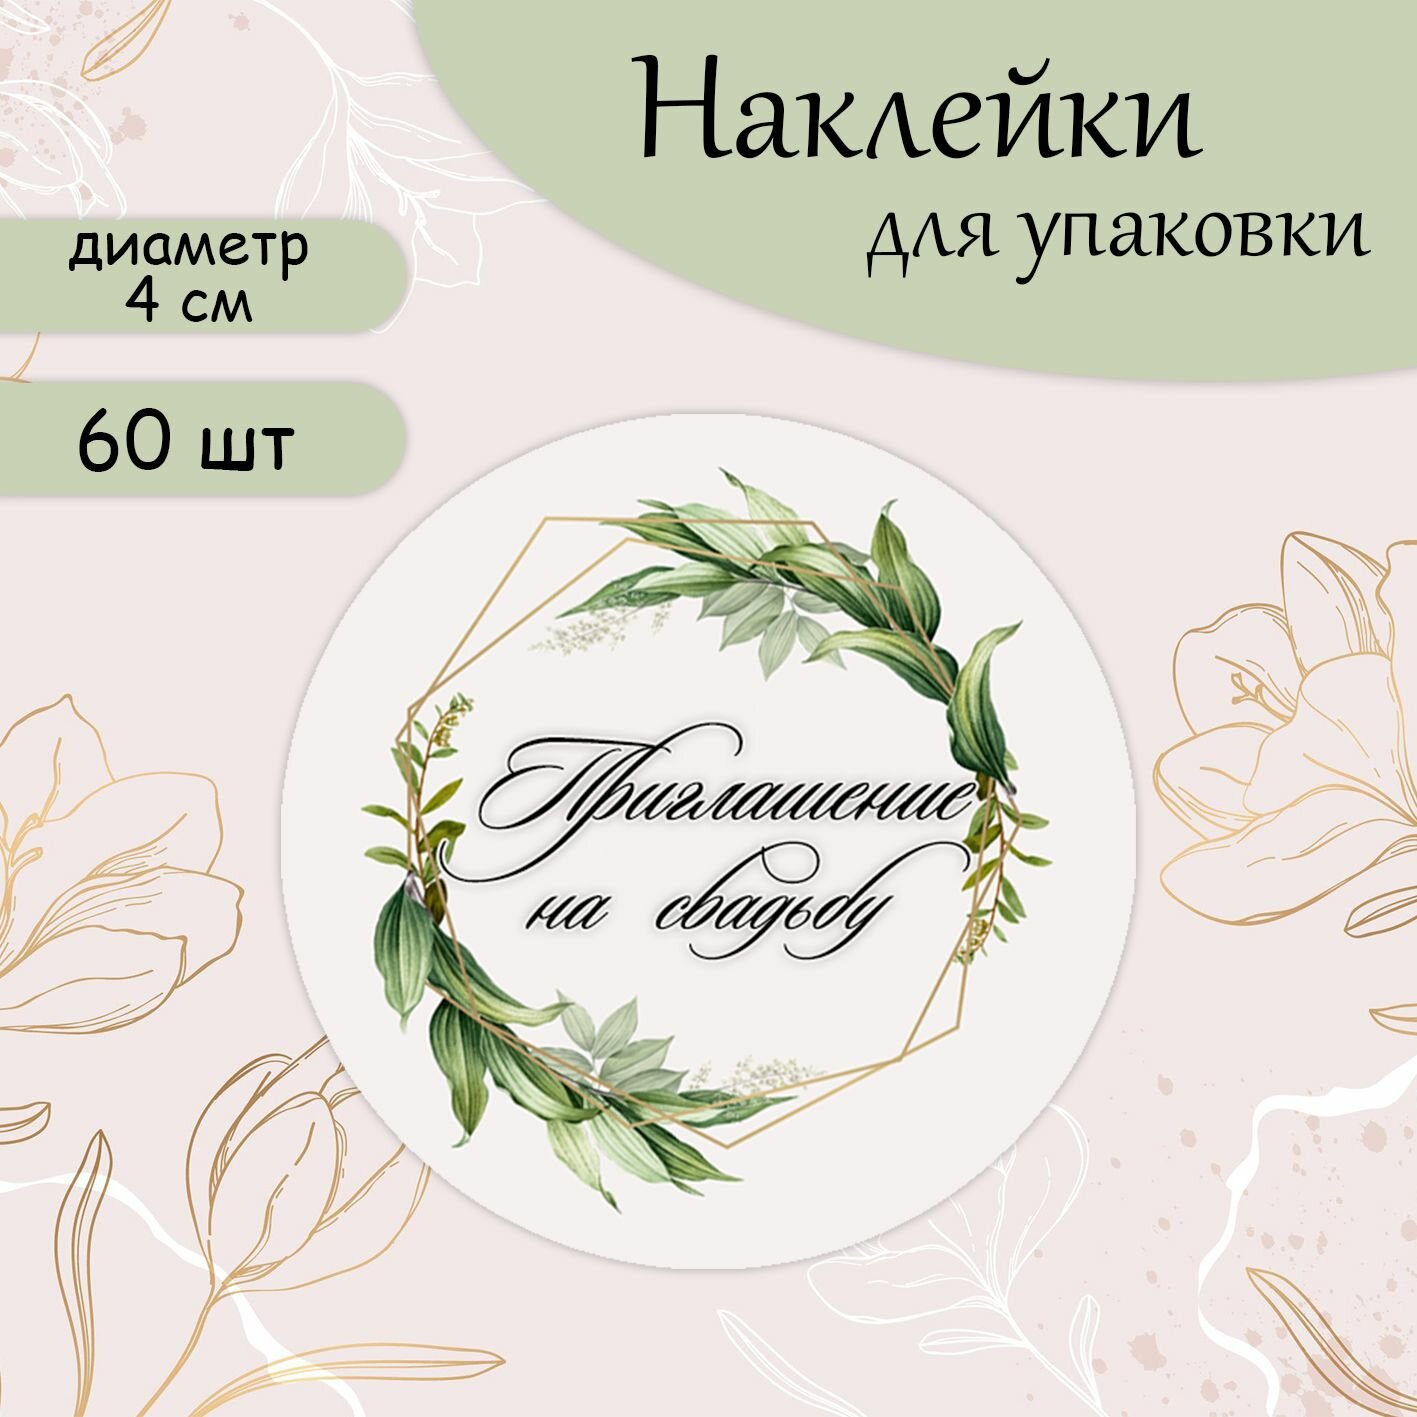 Наклейки-стикеры круглые приглашение на свадьбу, d 4 cм (60 шт)